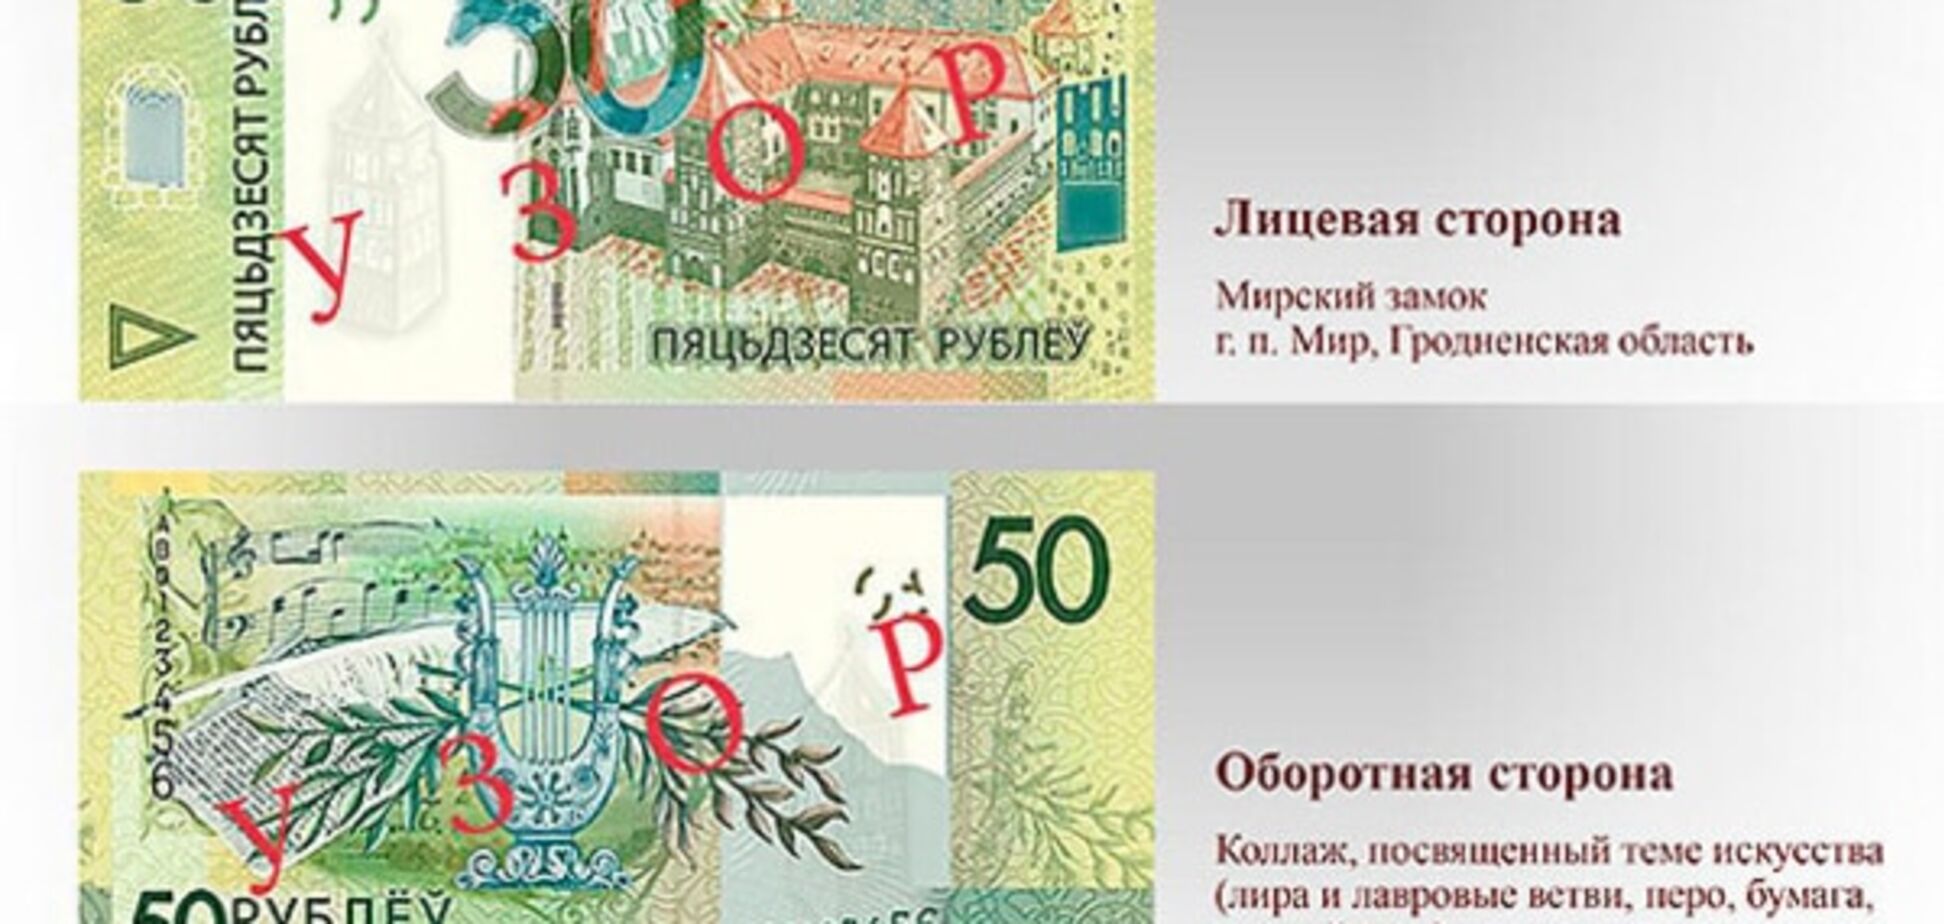 У Білорусі нові банкноти надрукували з орфографічною помилкою